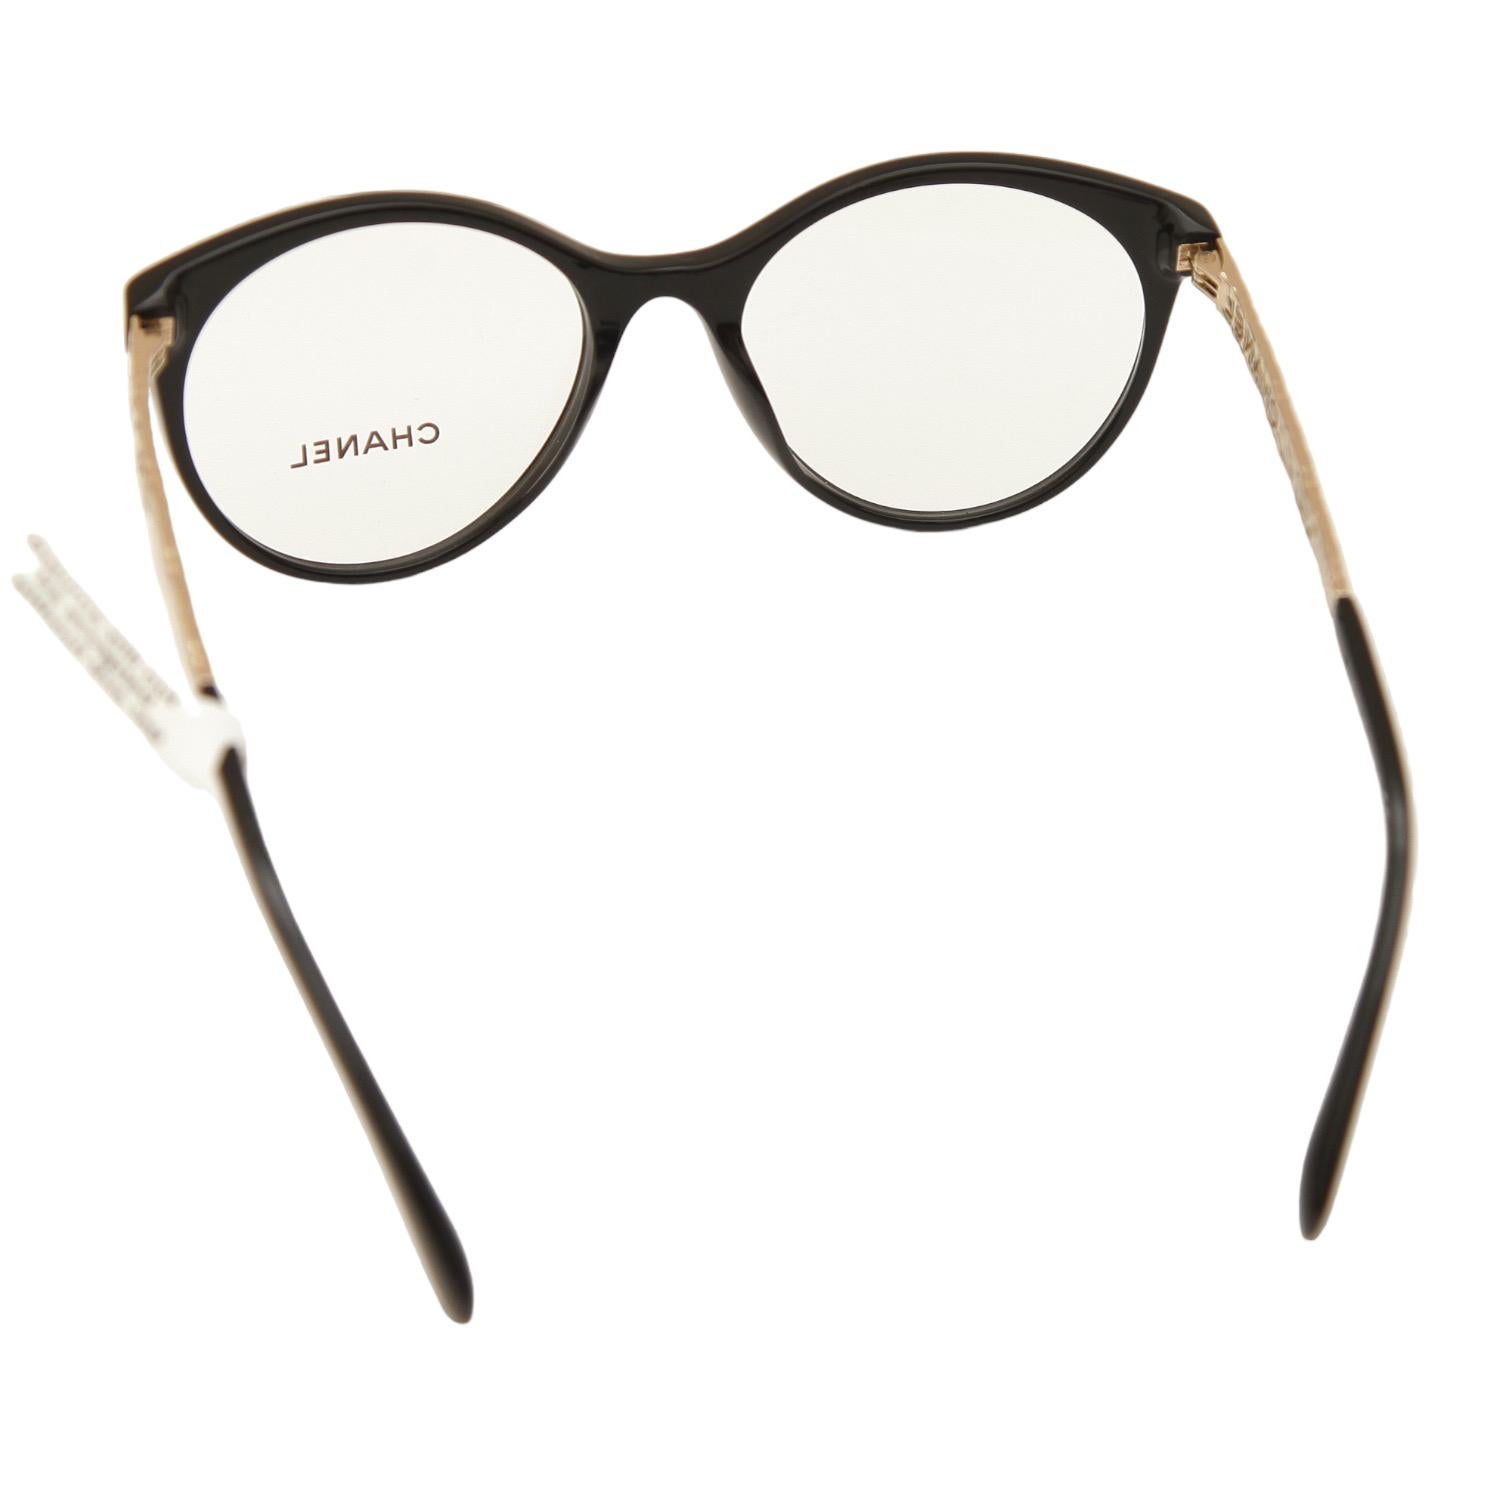 CHANEL Eyeglass Frames Black Gold PANTOS Acetate Metal Eyewear 3409 c.622 1